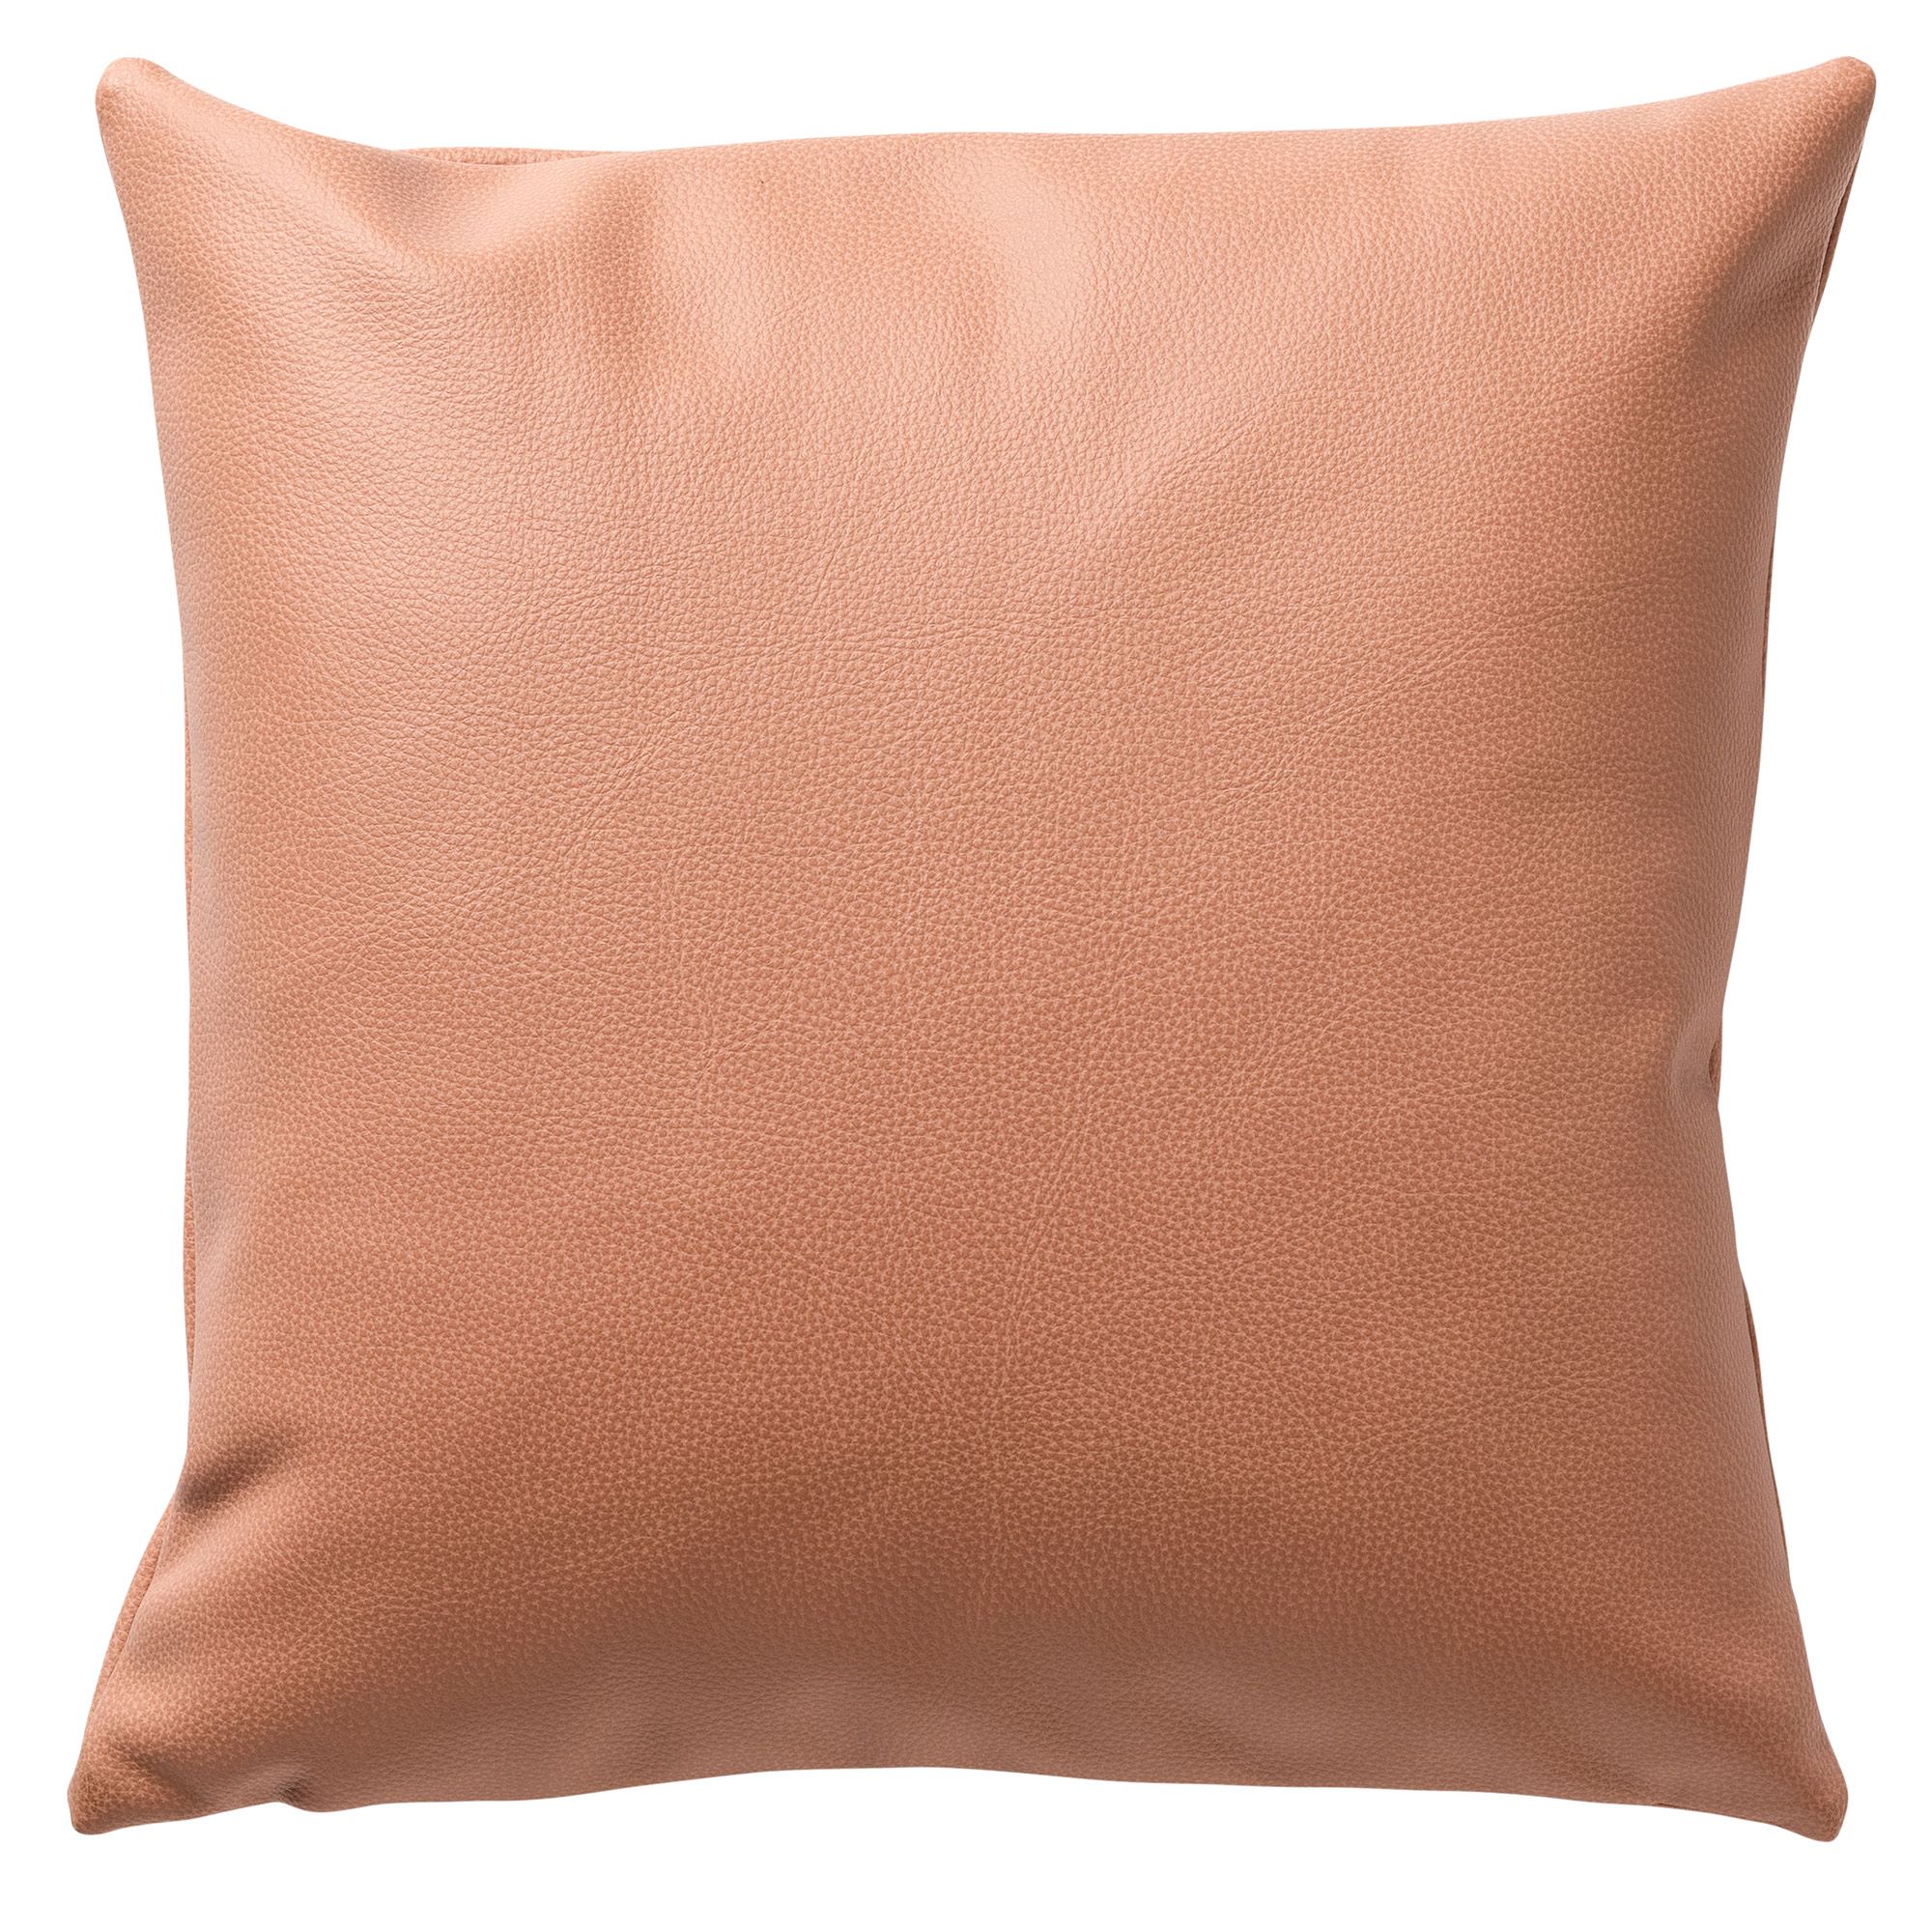 JARED - Dekokissen 45x45 cm - Lederoptik - coole Uni-Farbe - Cork - rosa